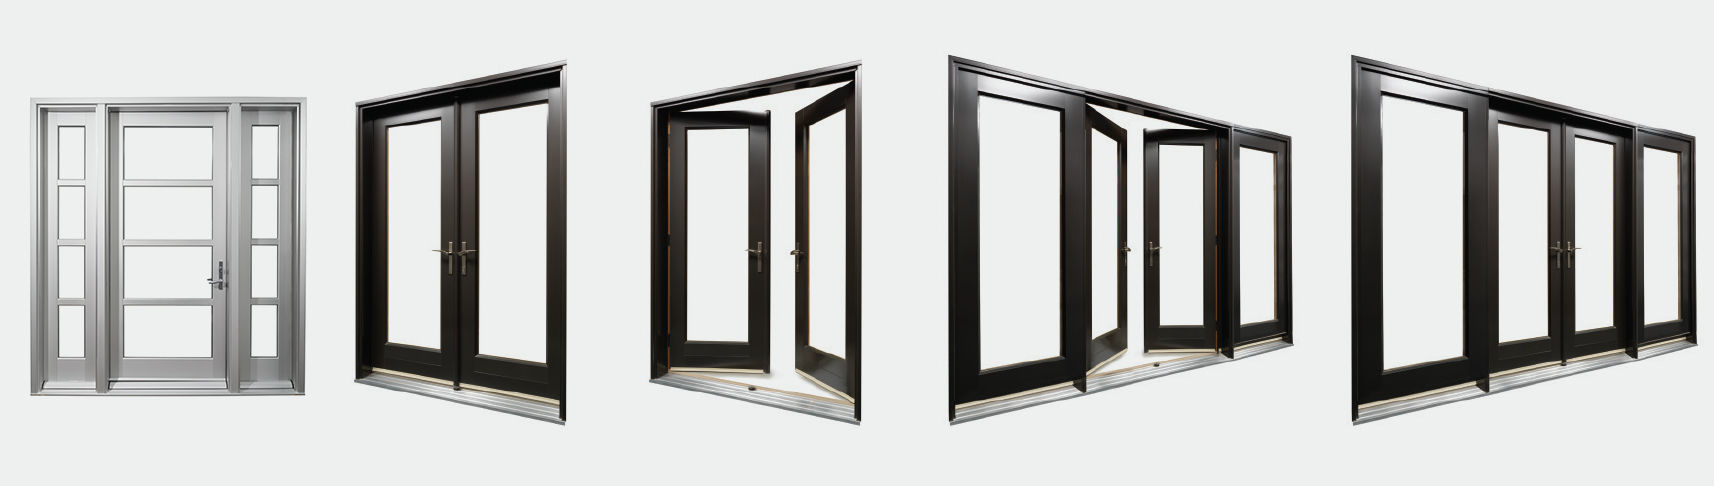 4 different lux aluminum clad door configurations